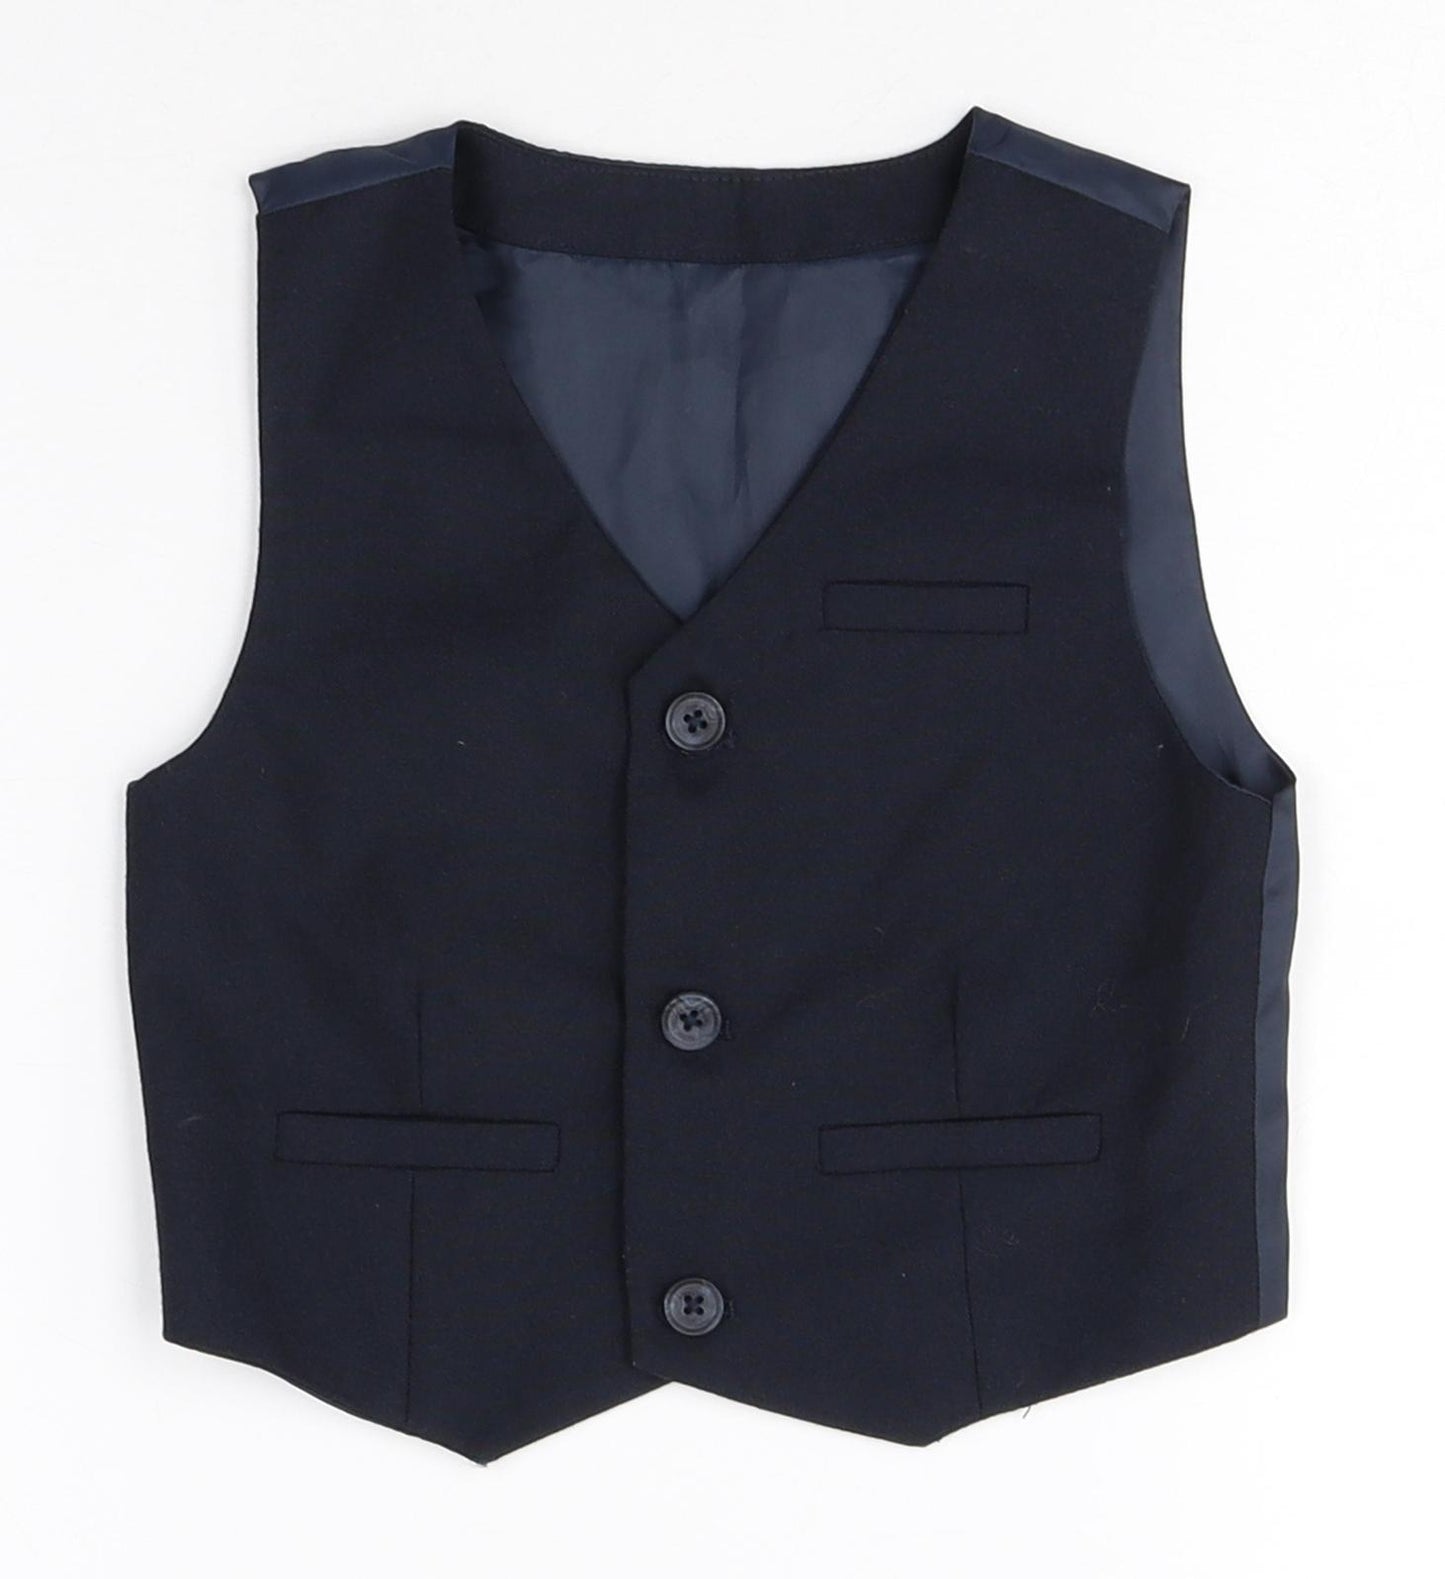 Preworn Boys Blue Polyester Trouser Suit Suit Waistcoat Size 18-24 Months